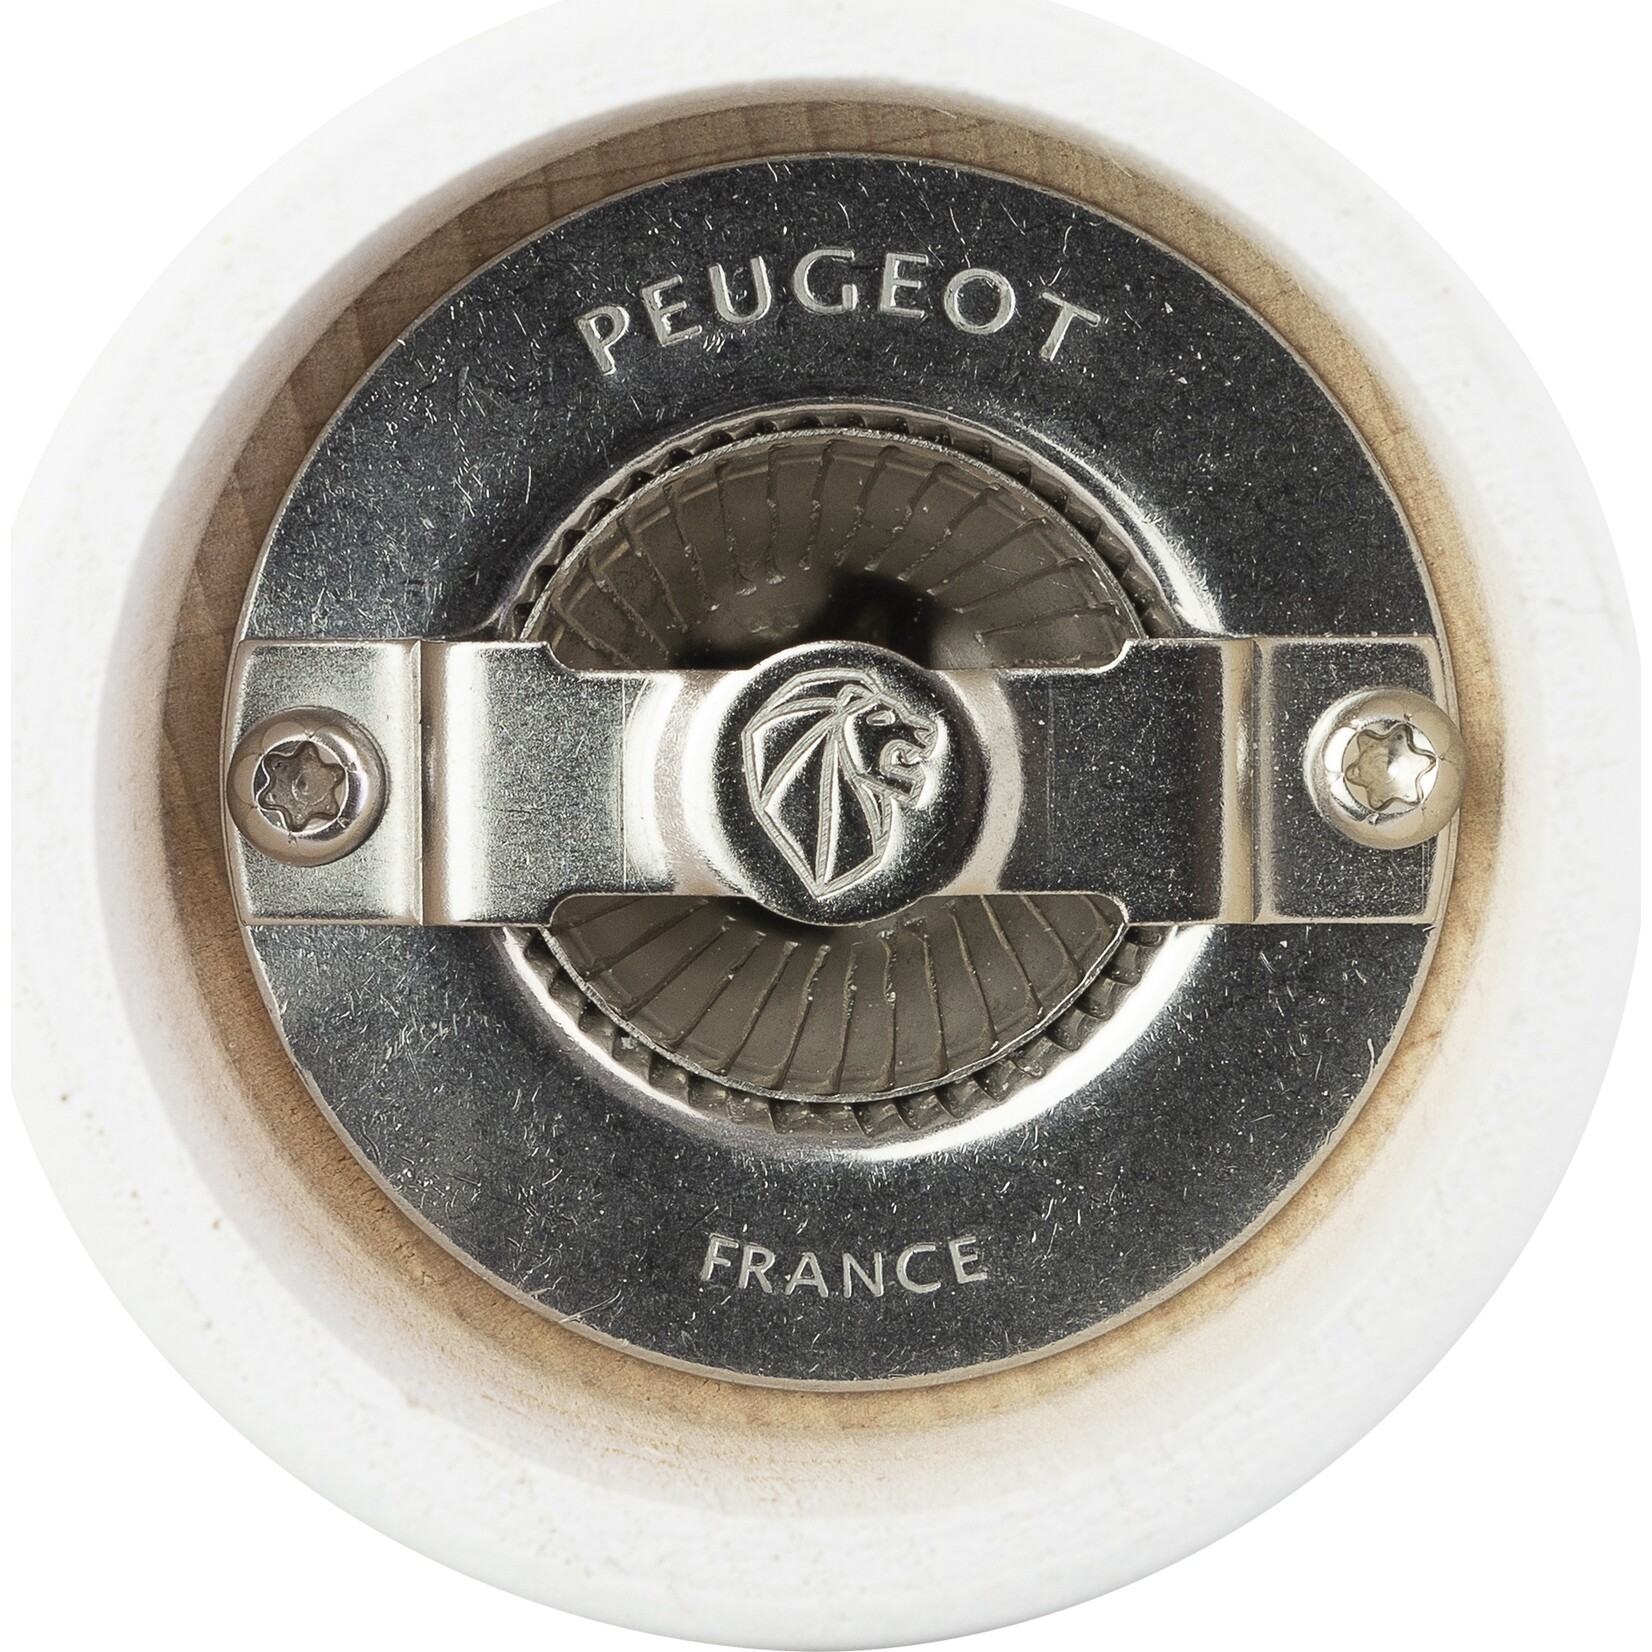 Peugeot Peugeot Tahiti peper- en zoutmolen 20 cm, mat zwart & mat wit, duo